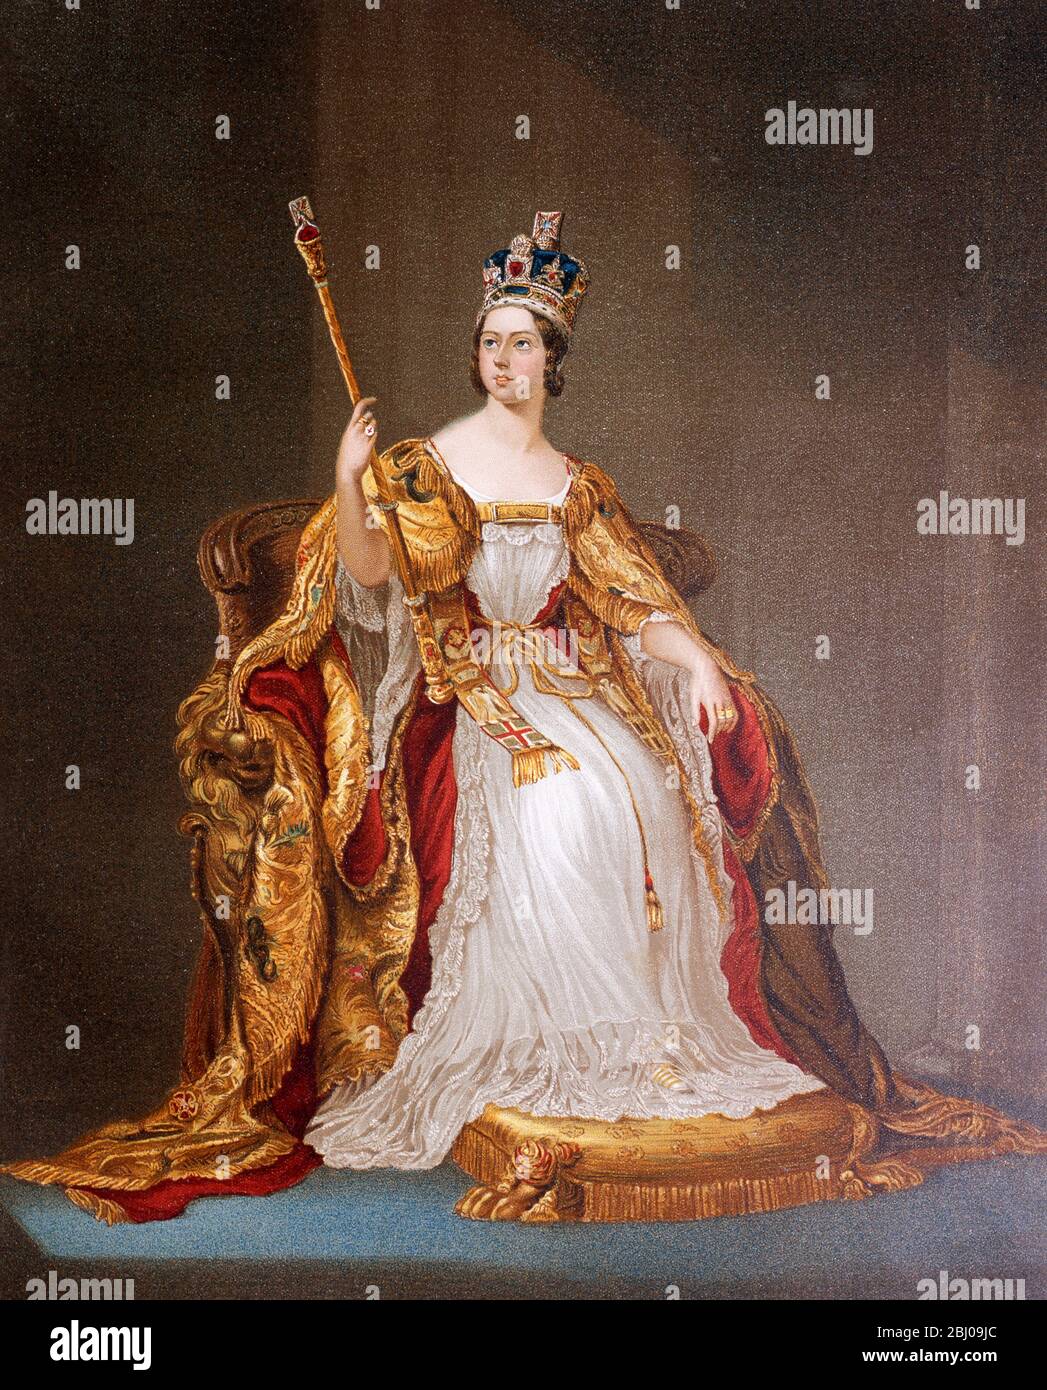 Königin Victoria im Krönungskleid 20. Juni 1837 - viele Speisen sind nach Königin Victoria benannt, darunter Victoria Pflaumen und Victoria Schwamm. Stockfoto